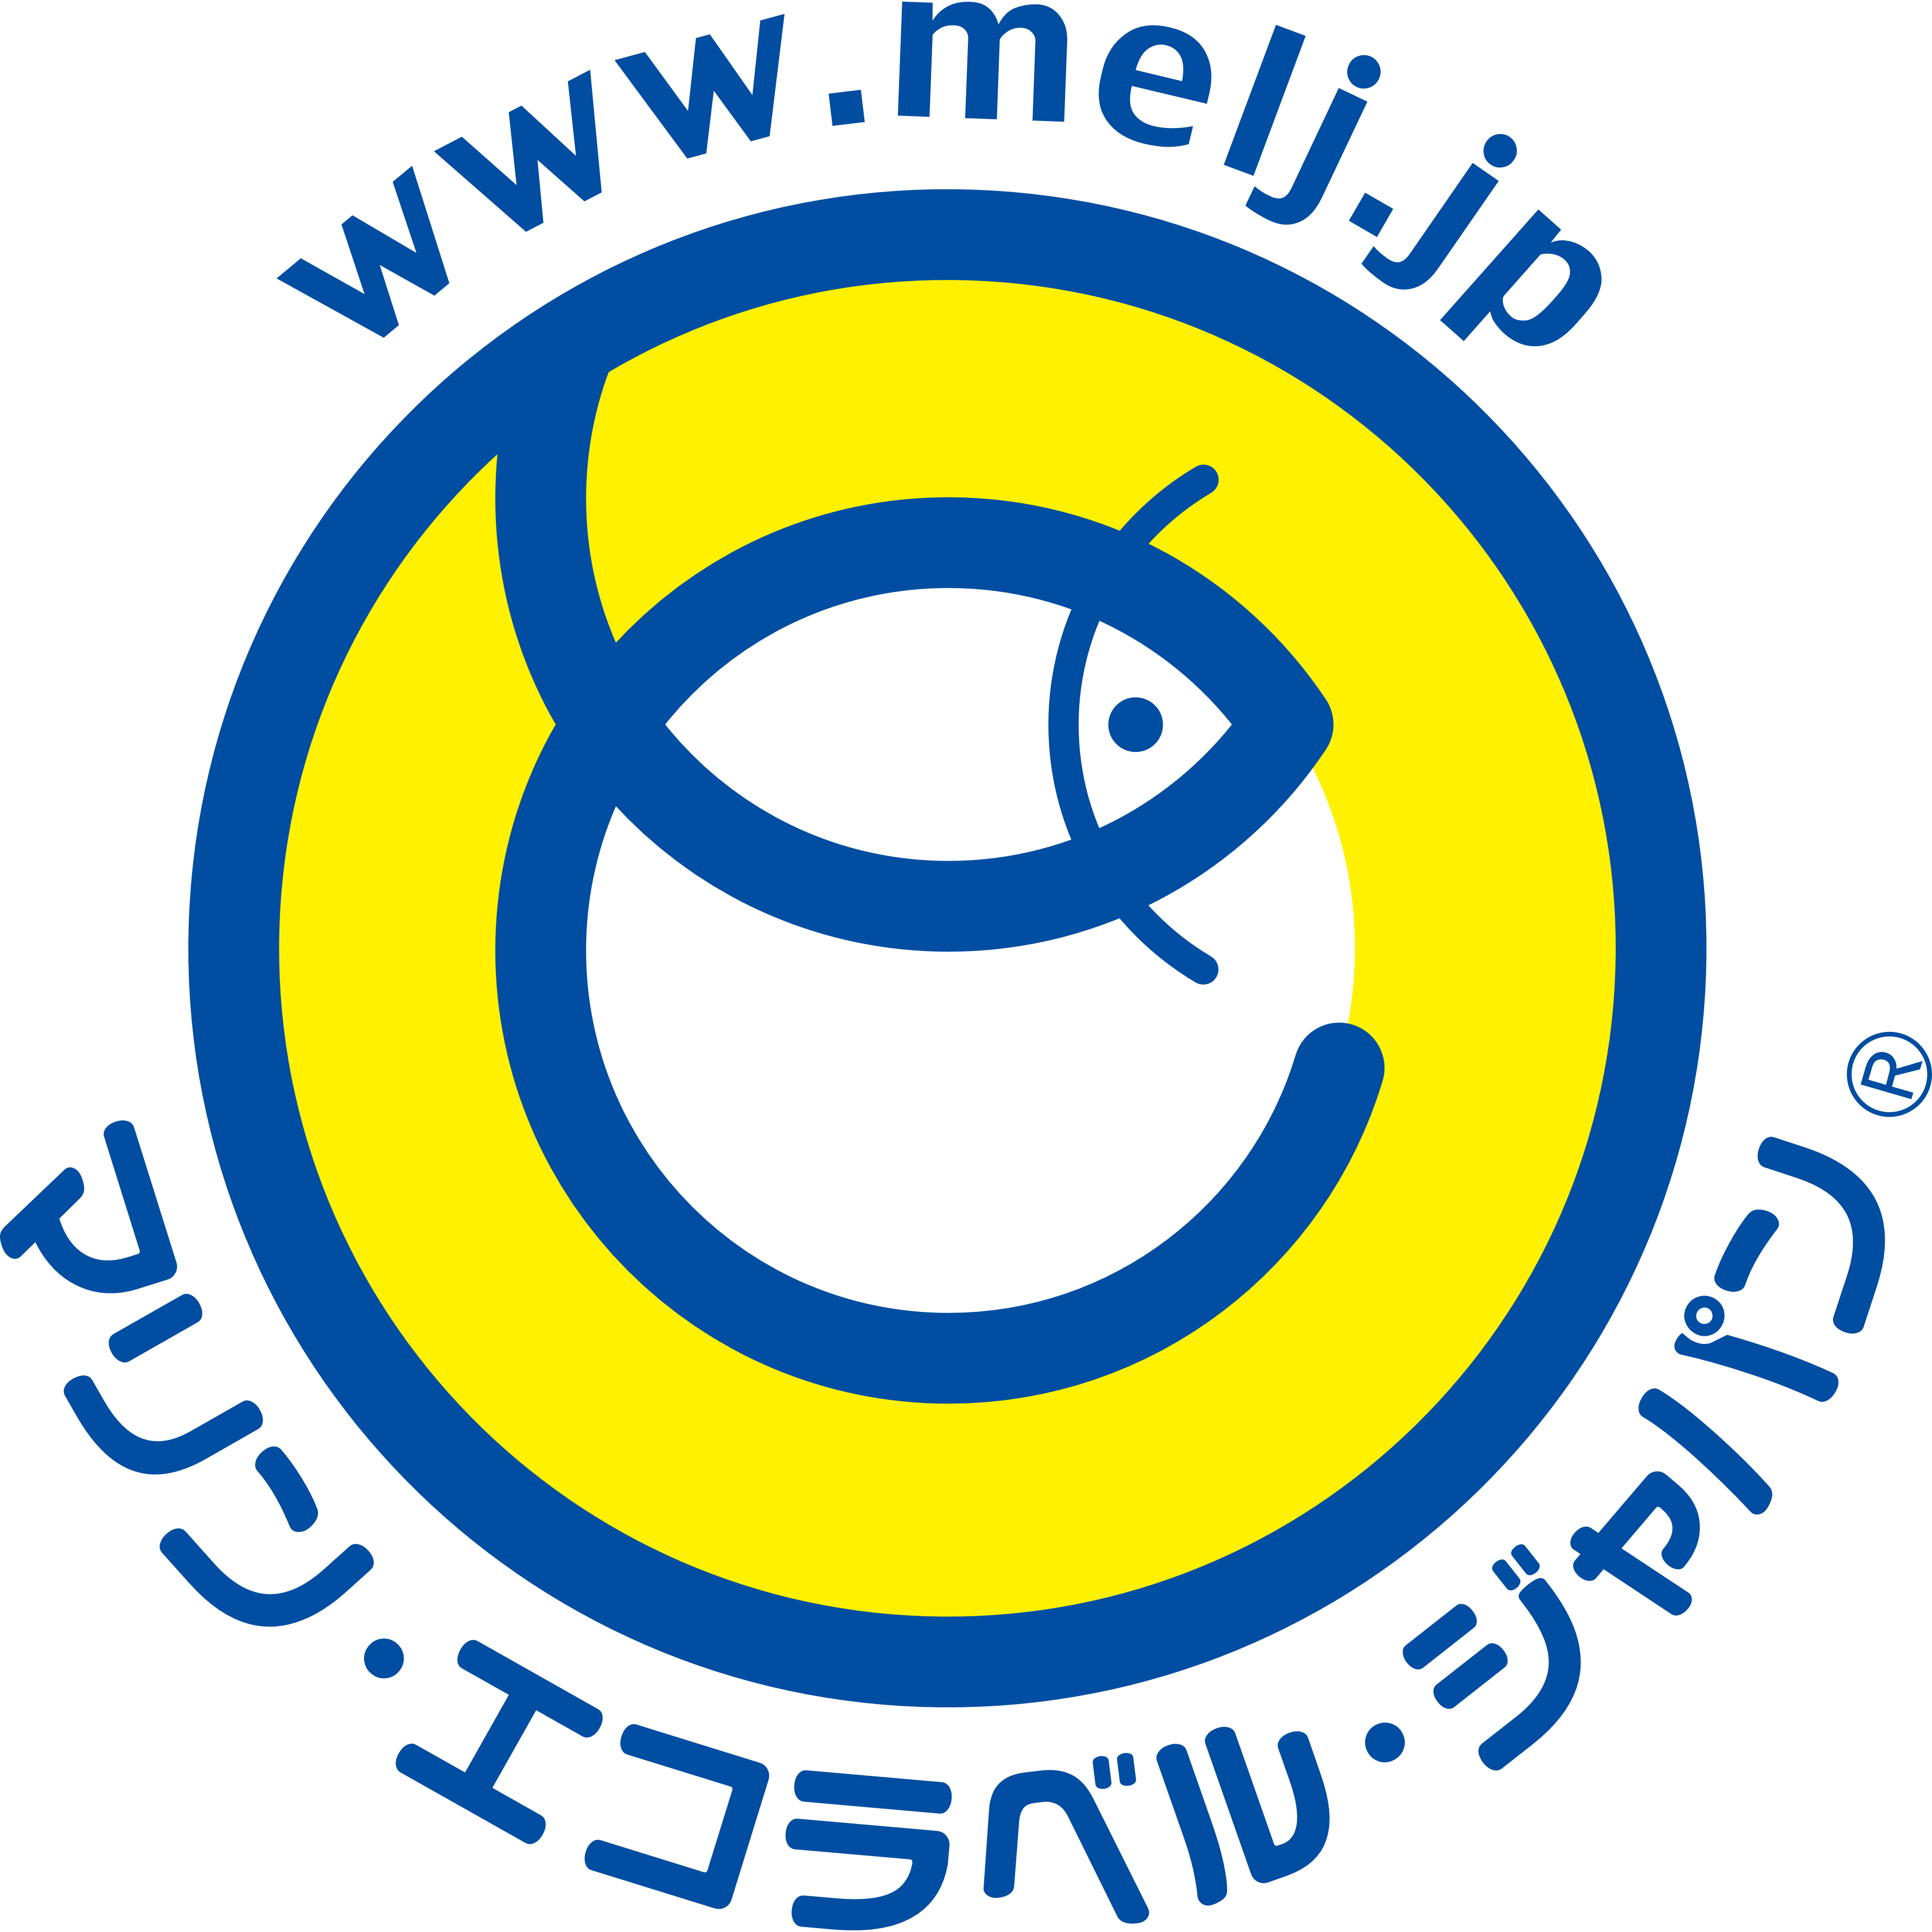 認証事業者各位 移行期間中における認証ロゴマーク使用について 未来につなげよう海と魚と魚食文化 Mel マリン エコラベル ジャパン